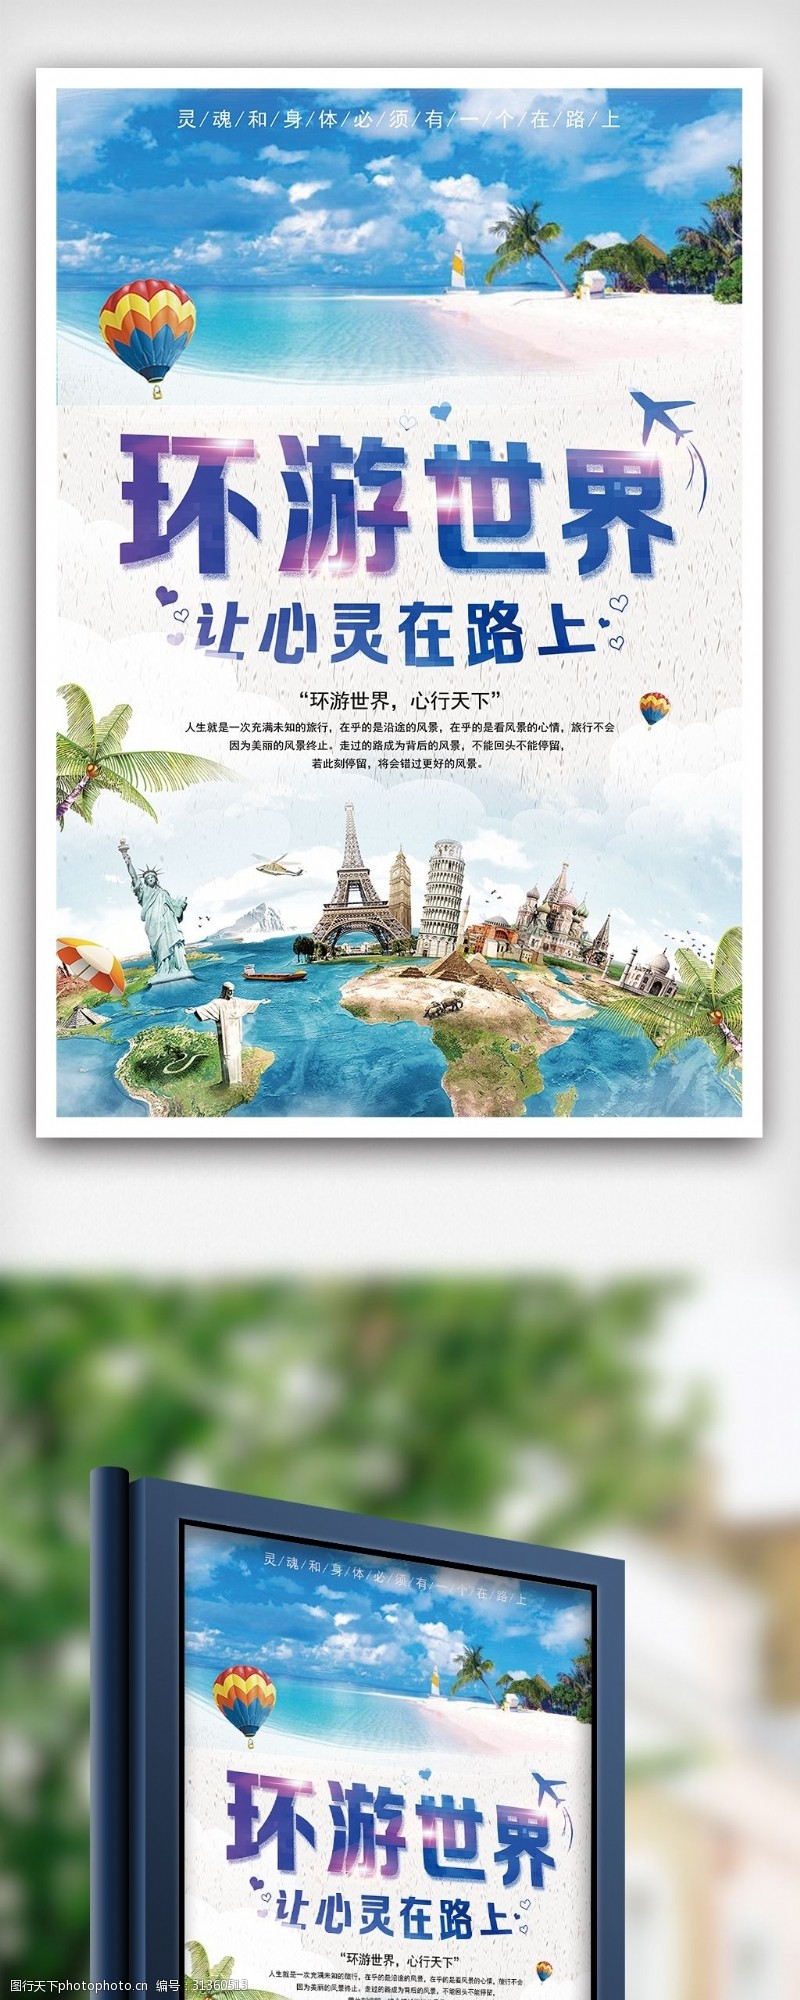 国庆宣传环游世界旅行宣传海报设计